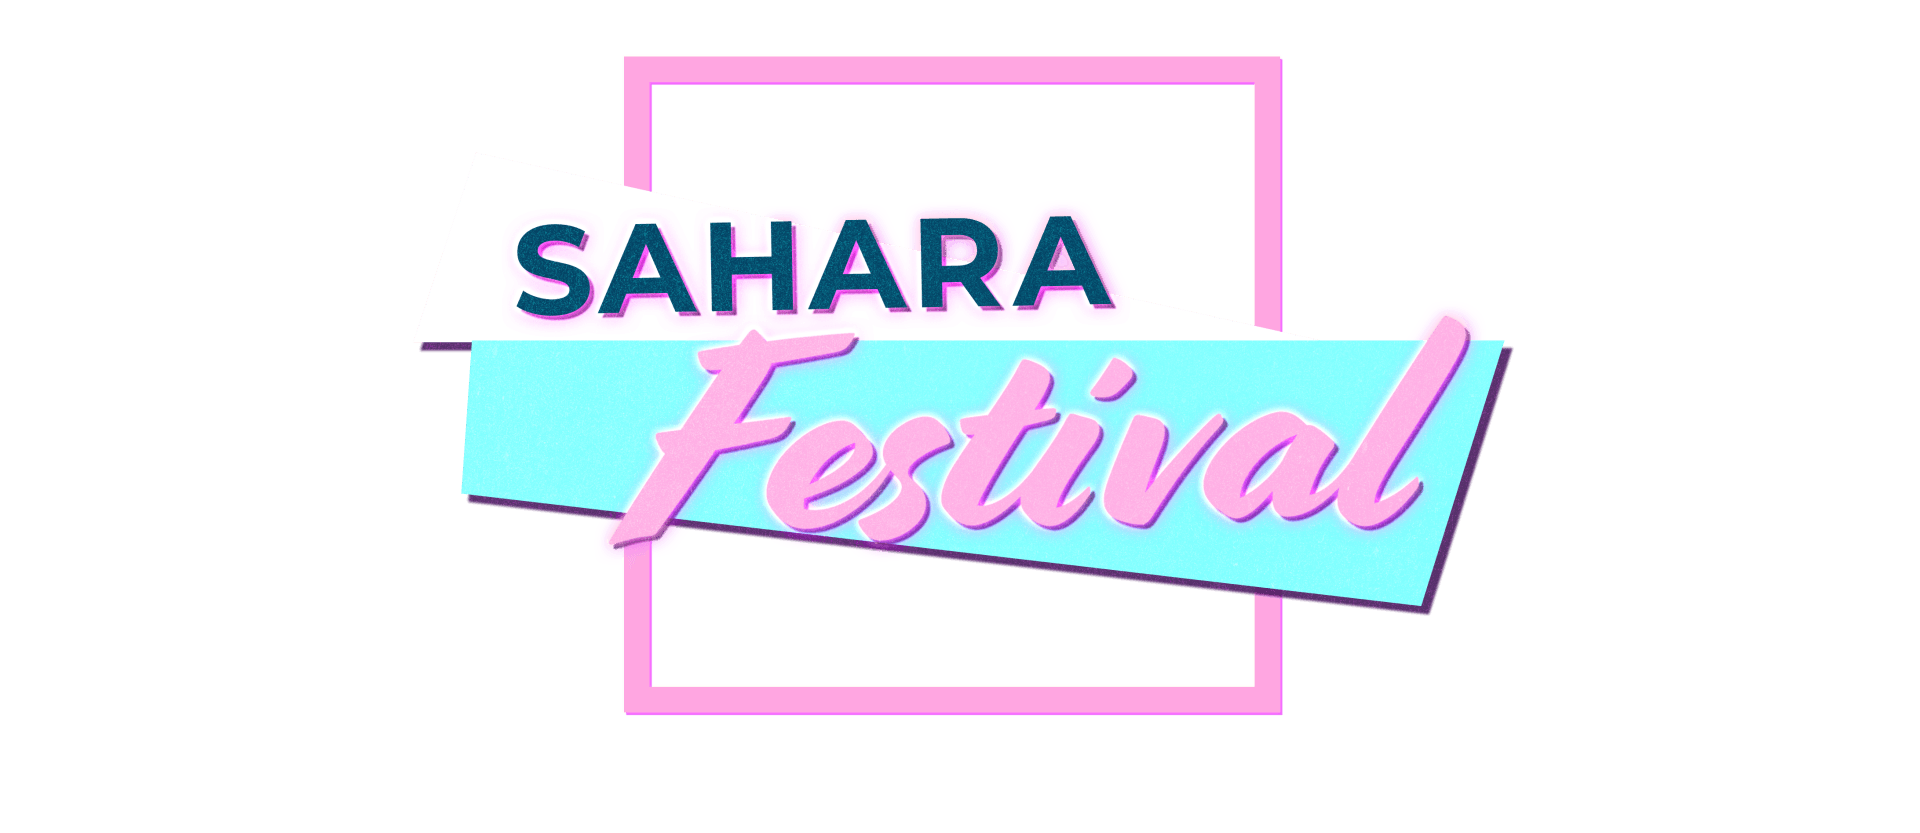 SAHARA FESTIVAL